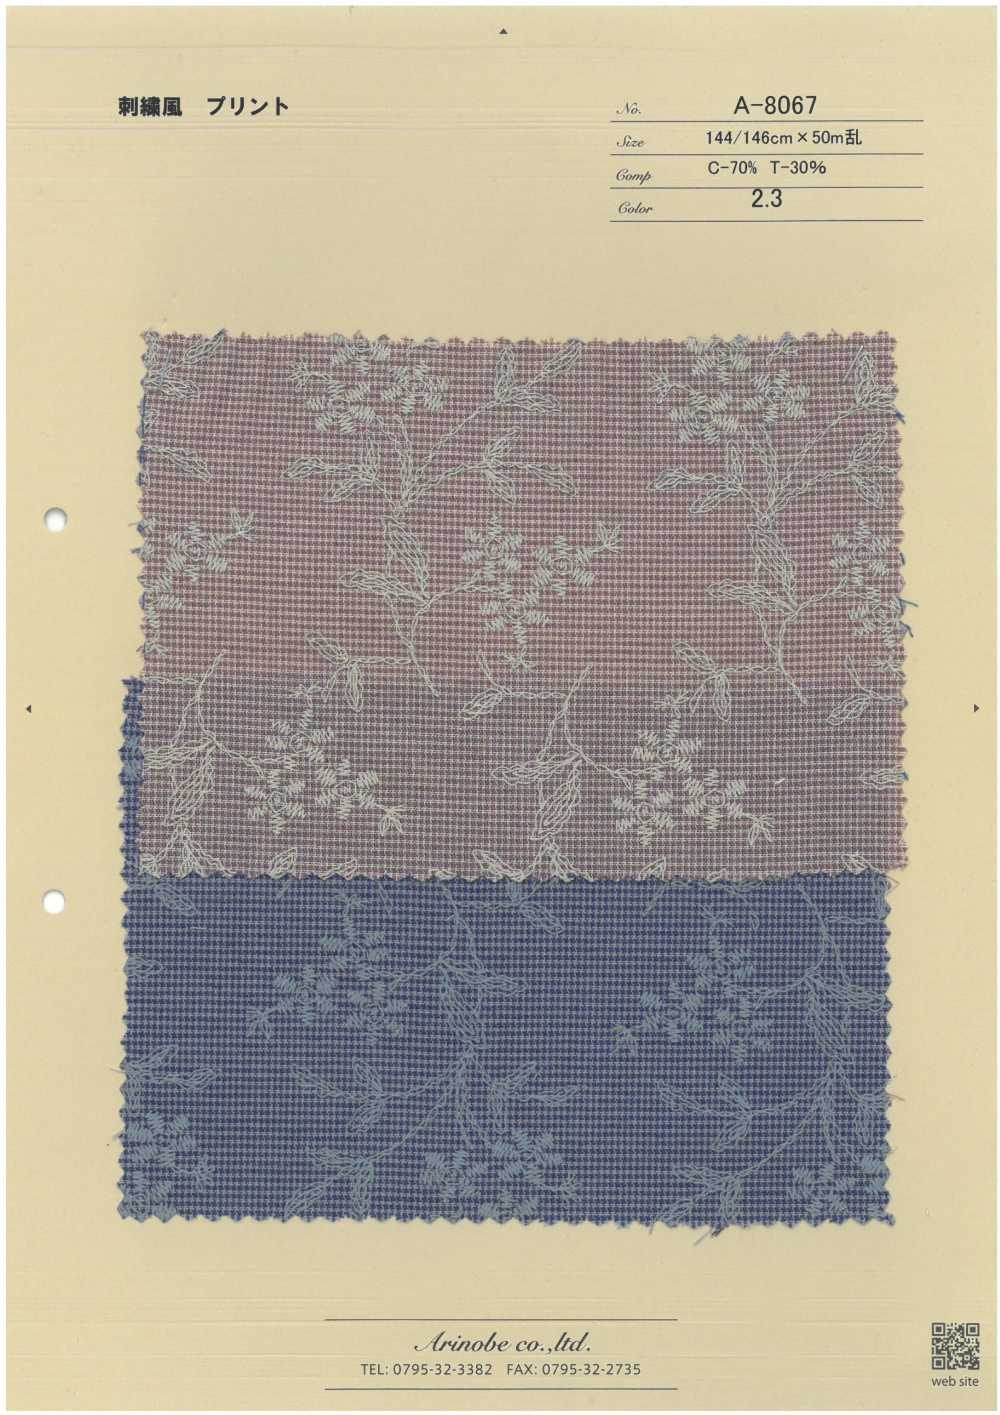 A-8067 Impressão Estilo Bordado[Têxtil / Tecido] ARINOBE CO., LTD.